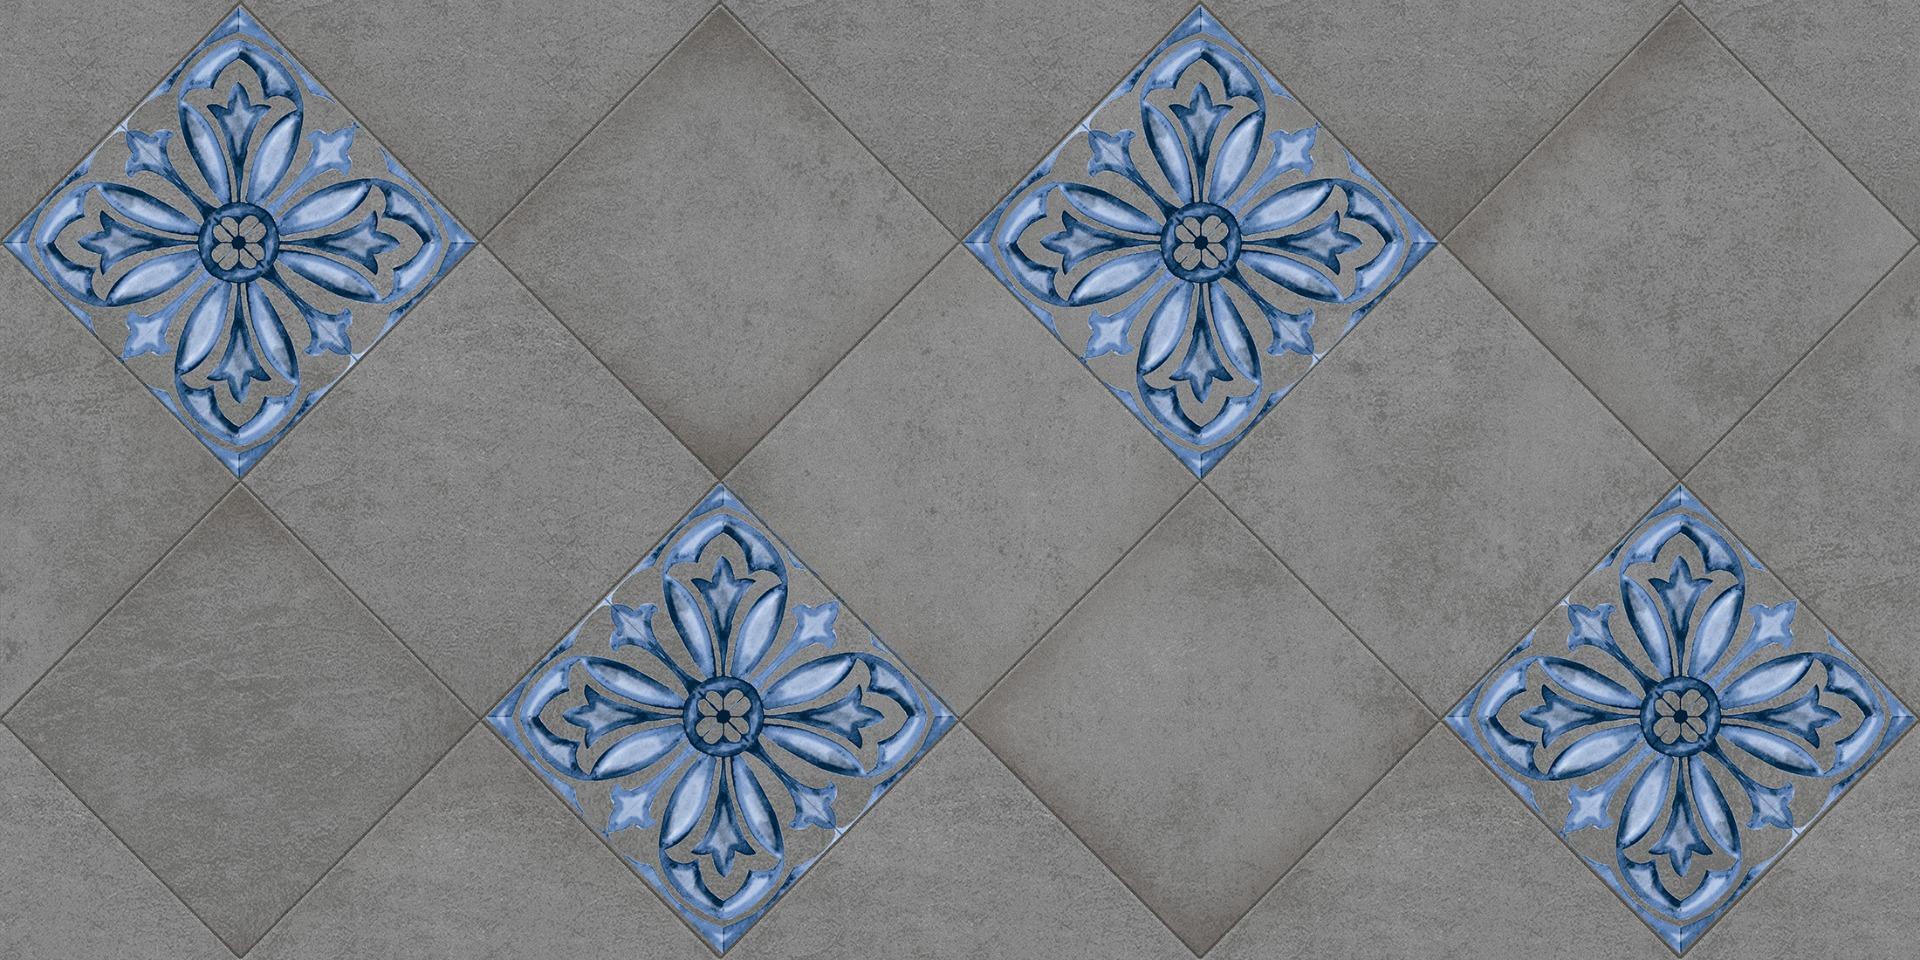 Floor Tiles for Bathroom Tiles, Living Room Tiles, Bedroom Tiles, Accent Tiles, Hospital Tiles, High Traffic Tiles, Bar/Restaurant, Commercial/Office, School & Collages